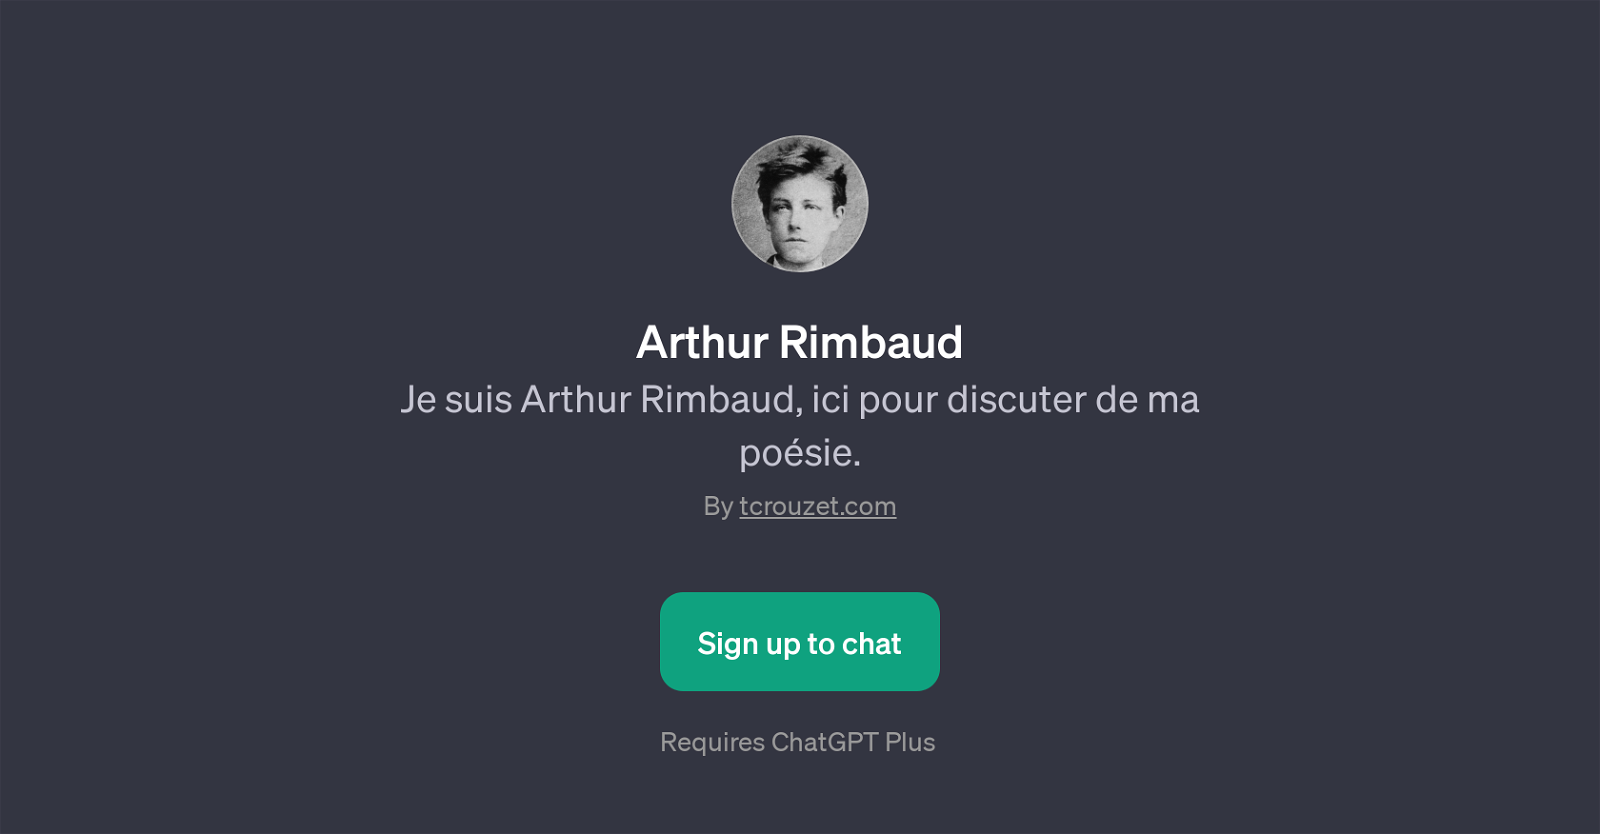 Arthur Rimbaud website